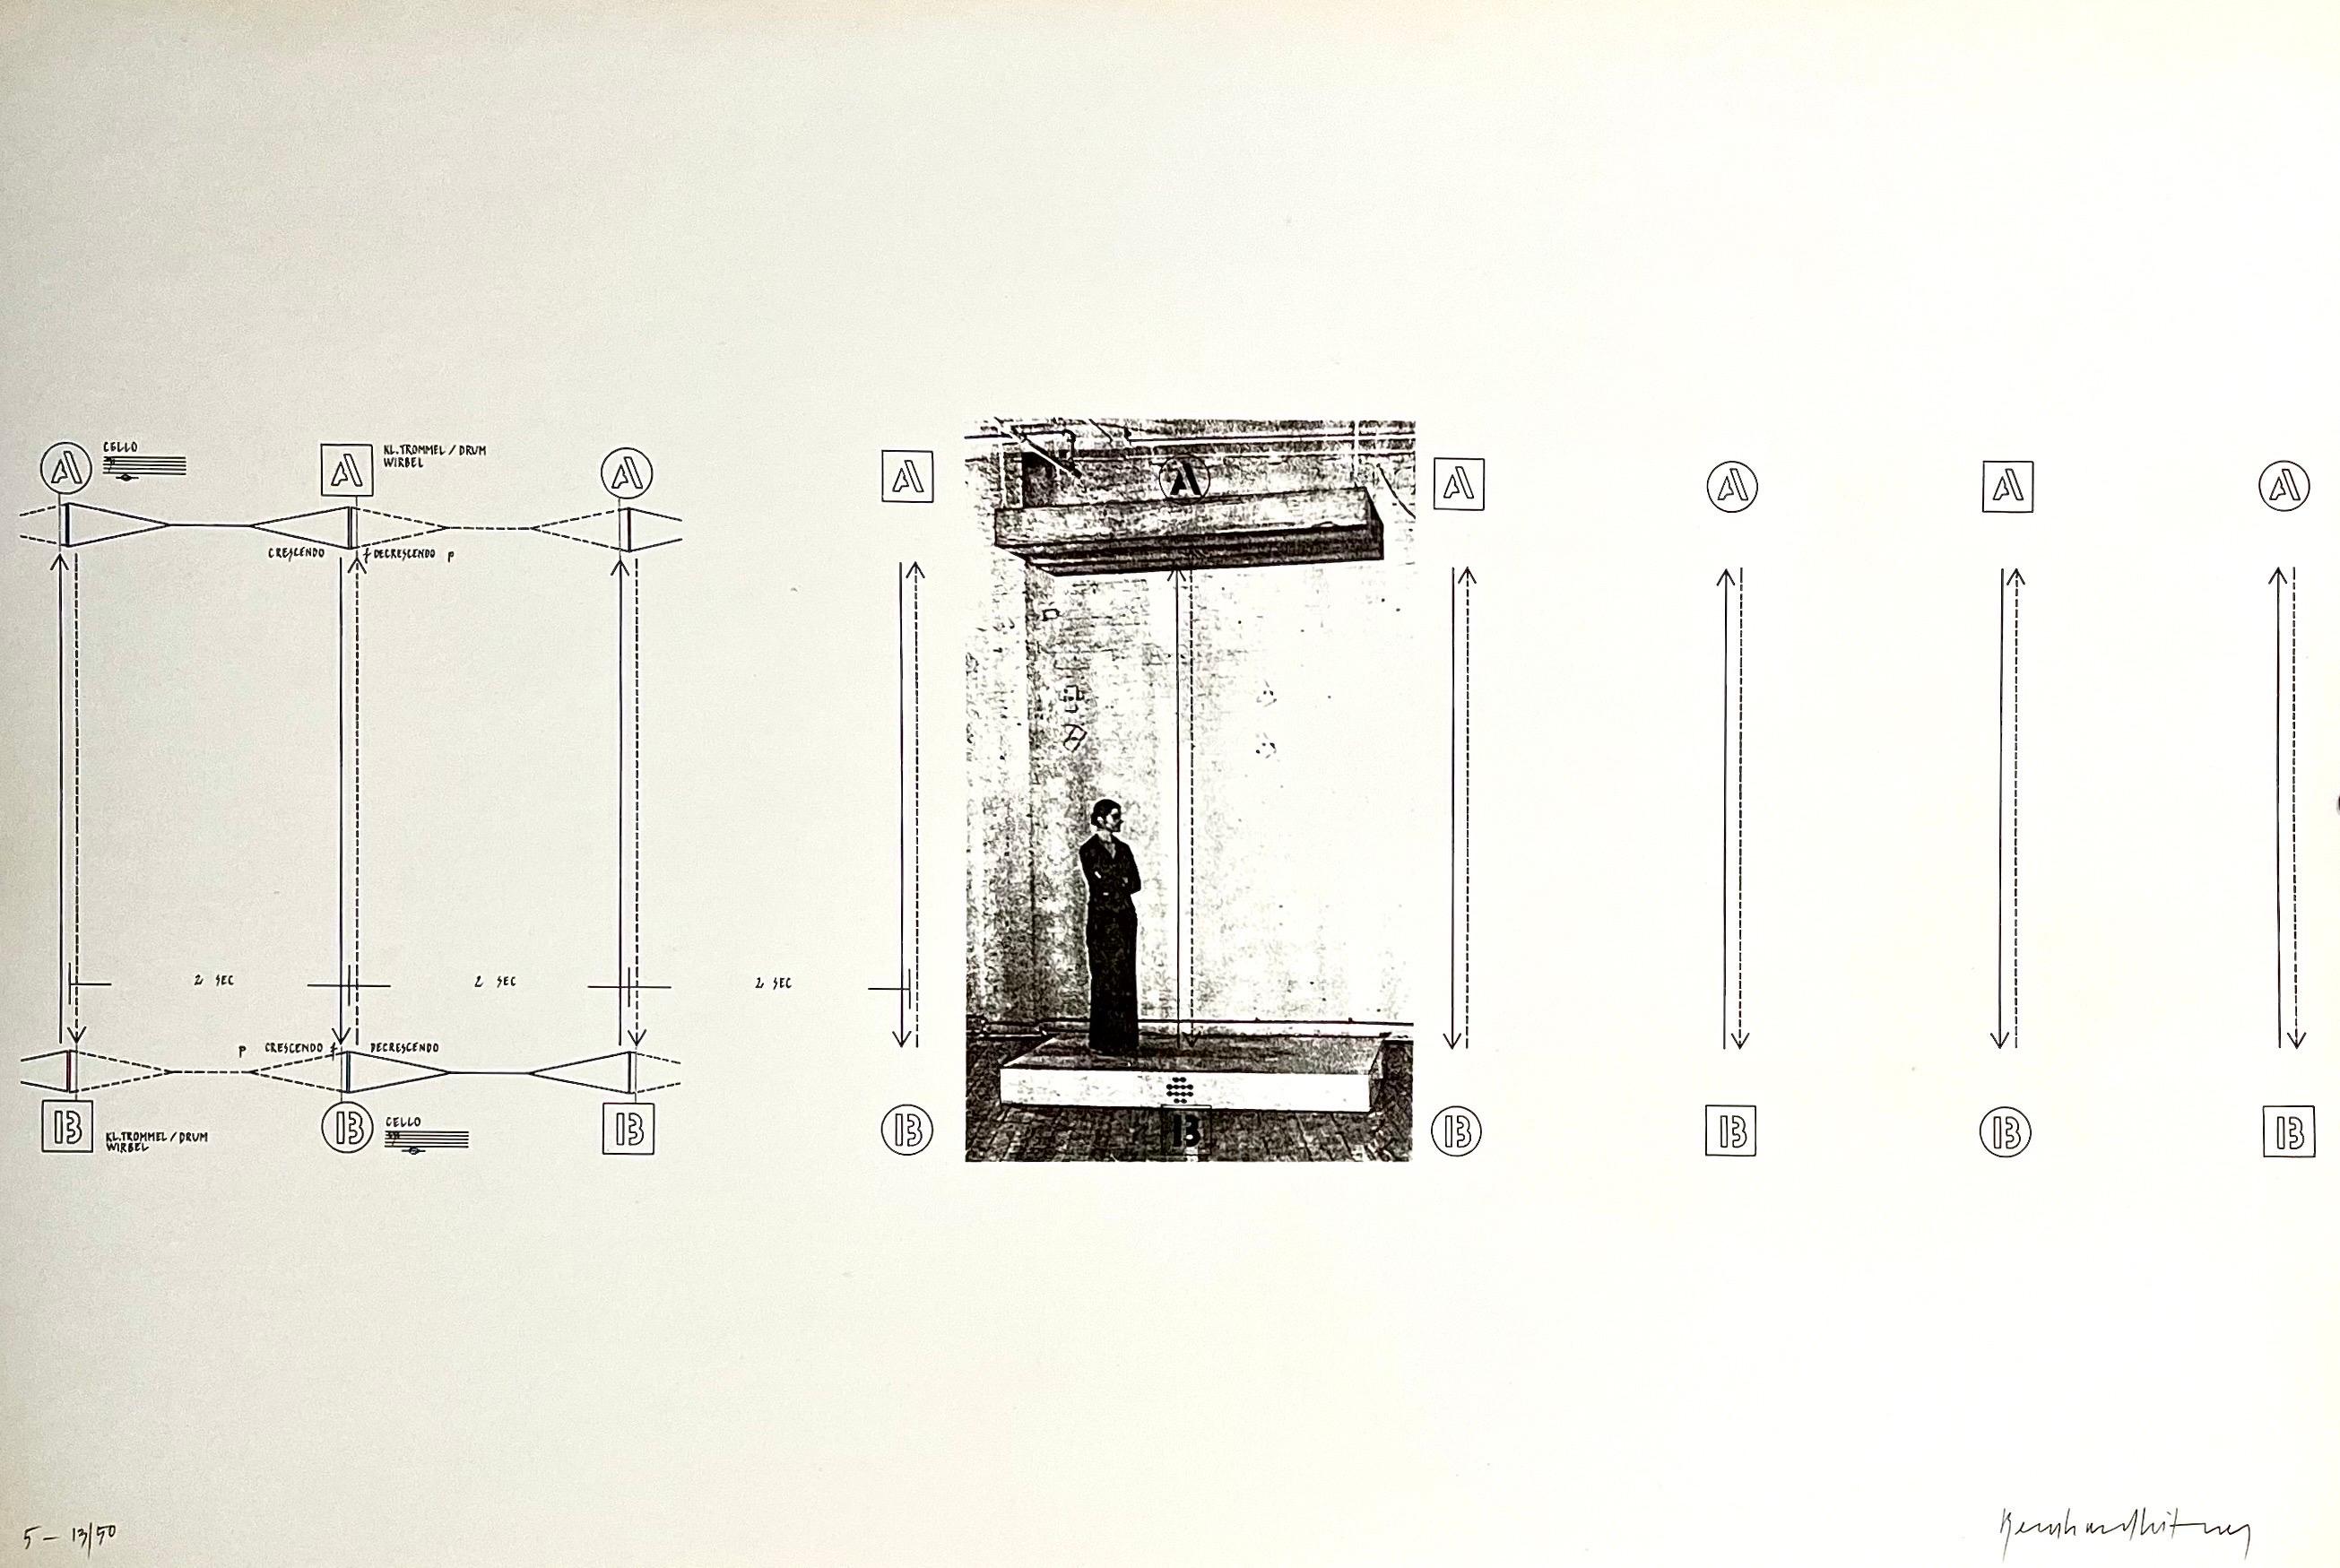 Bernhard Leitner, (autrichien, 1938) 
Extrait du portfolio "Sound : Space"  "Ton : Raum"
Publié à compte d'auteur par l'artiste en 1975/1976, 
Edition limitée à 50 exemplaires
Signé à la main au crayon par l'artiste.

Selon sa galerie, il s'agit